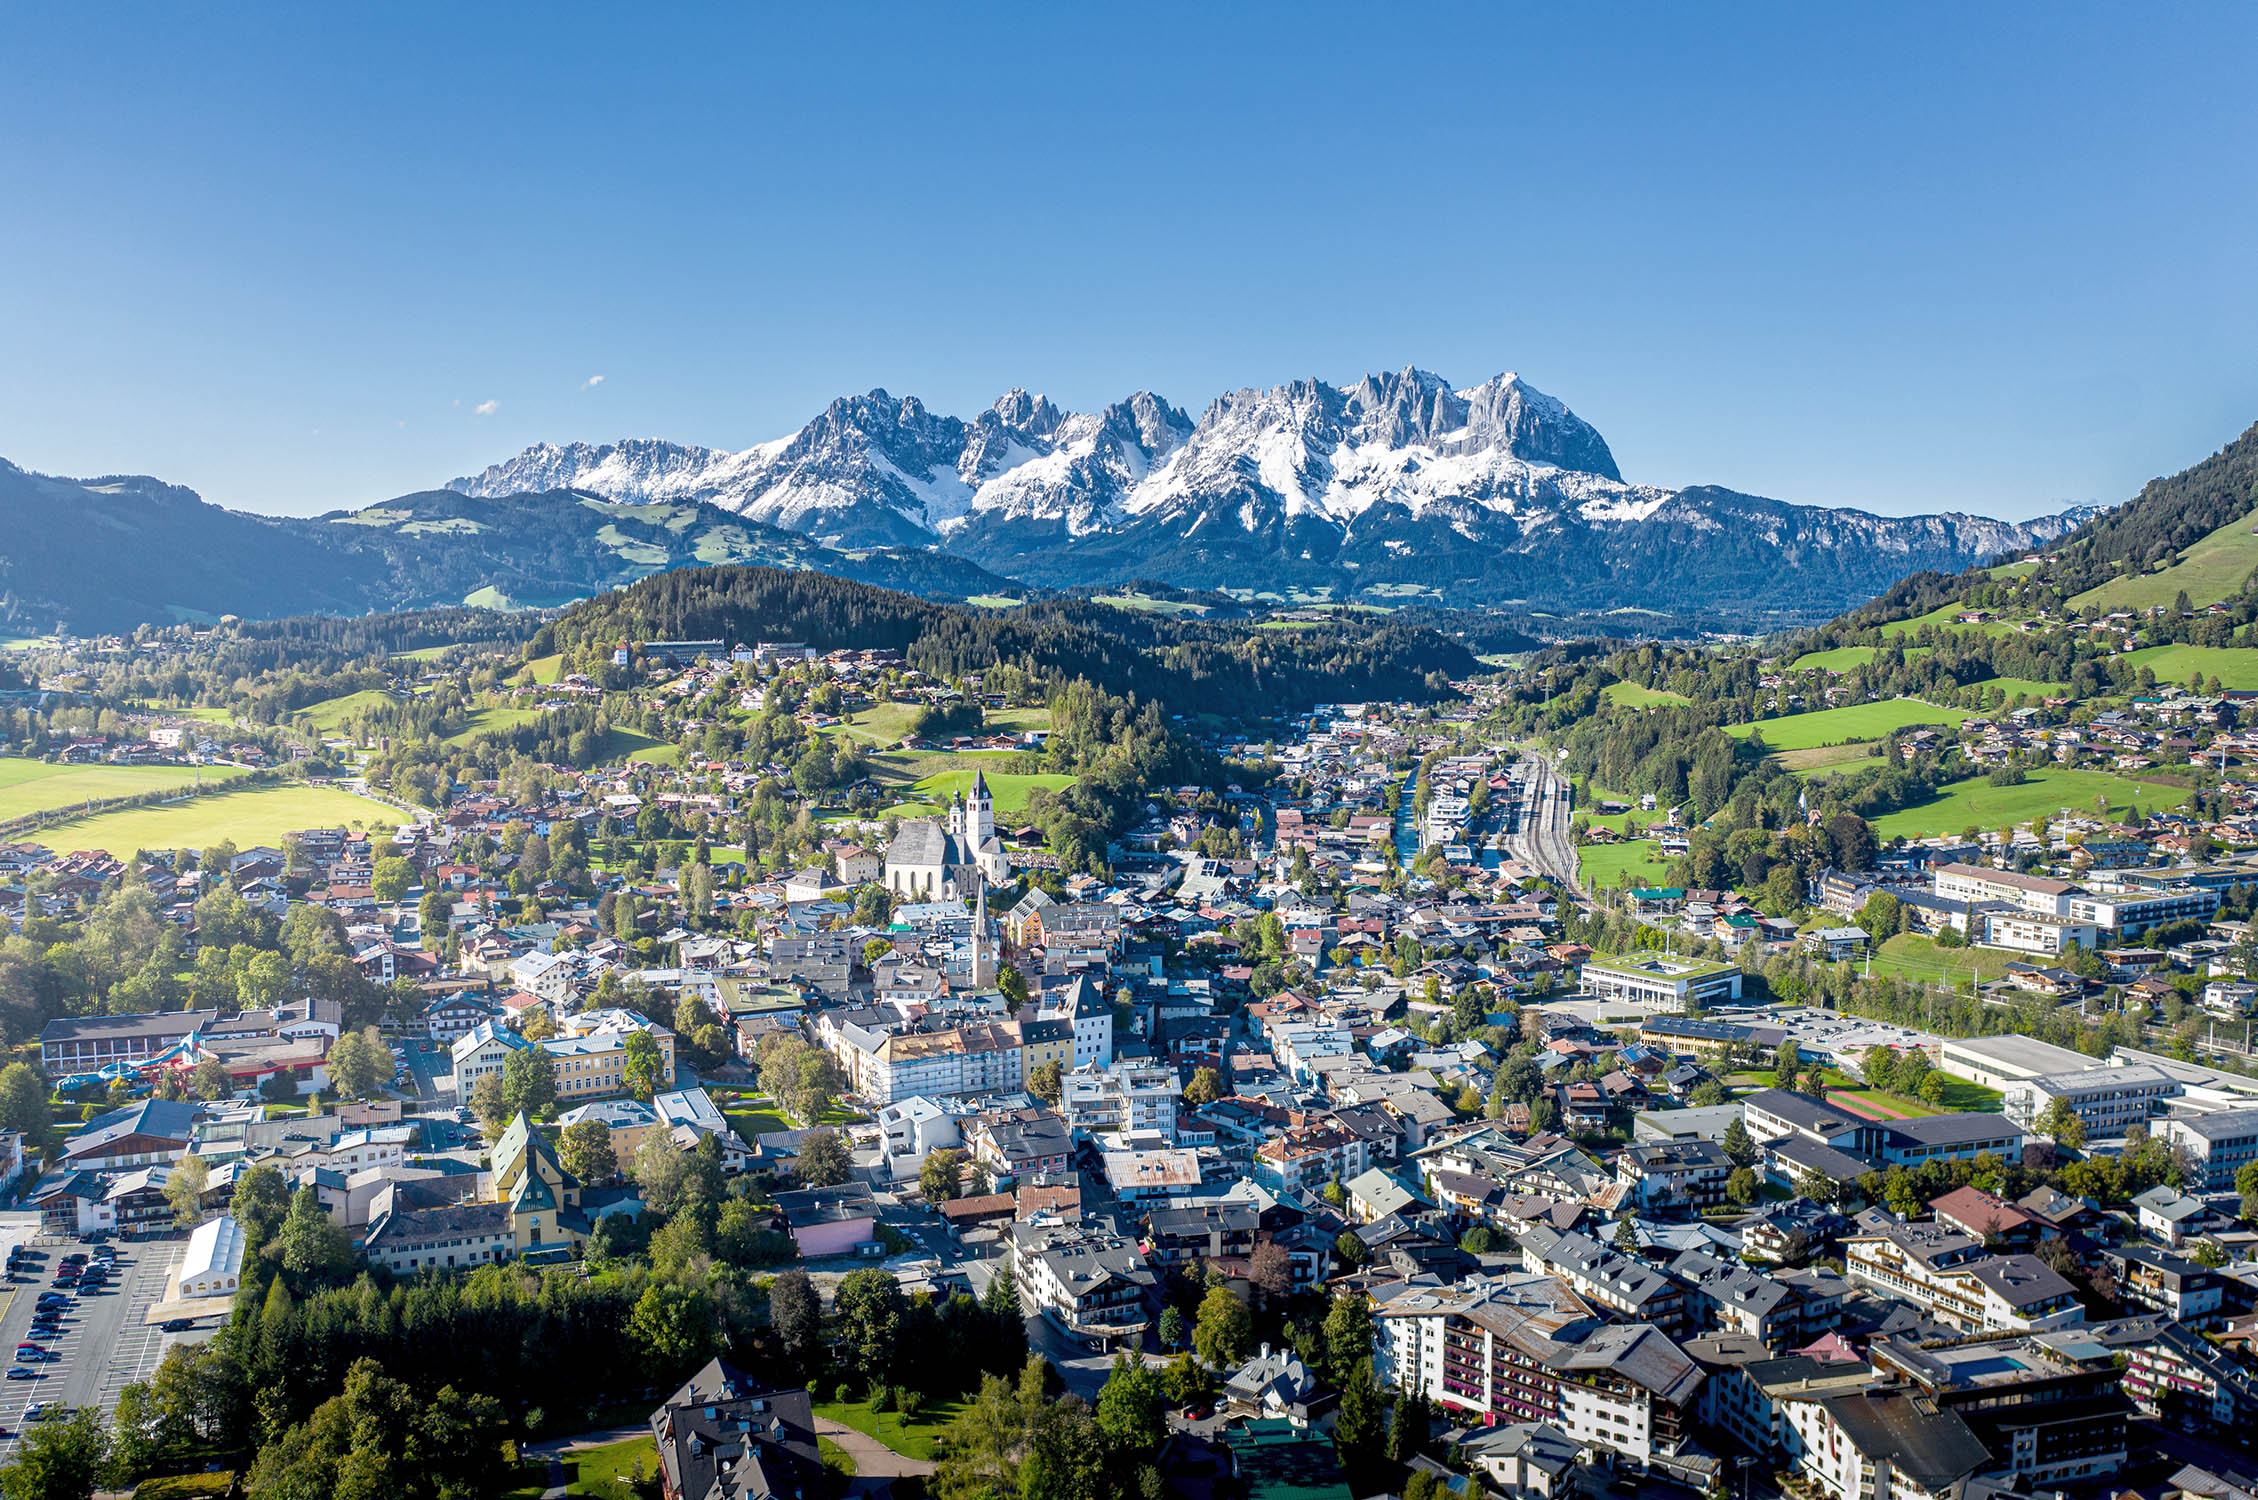 Reith bei Kitzbühel photo, copyright: 